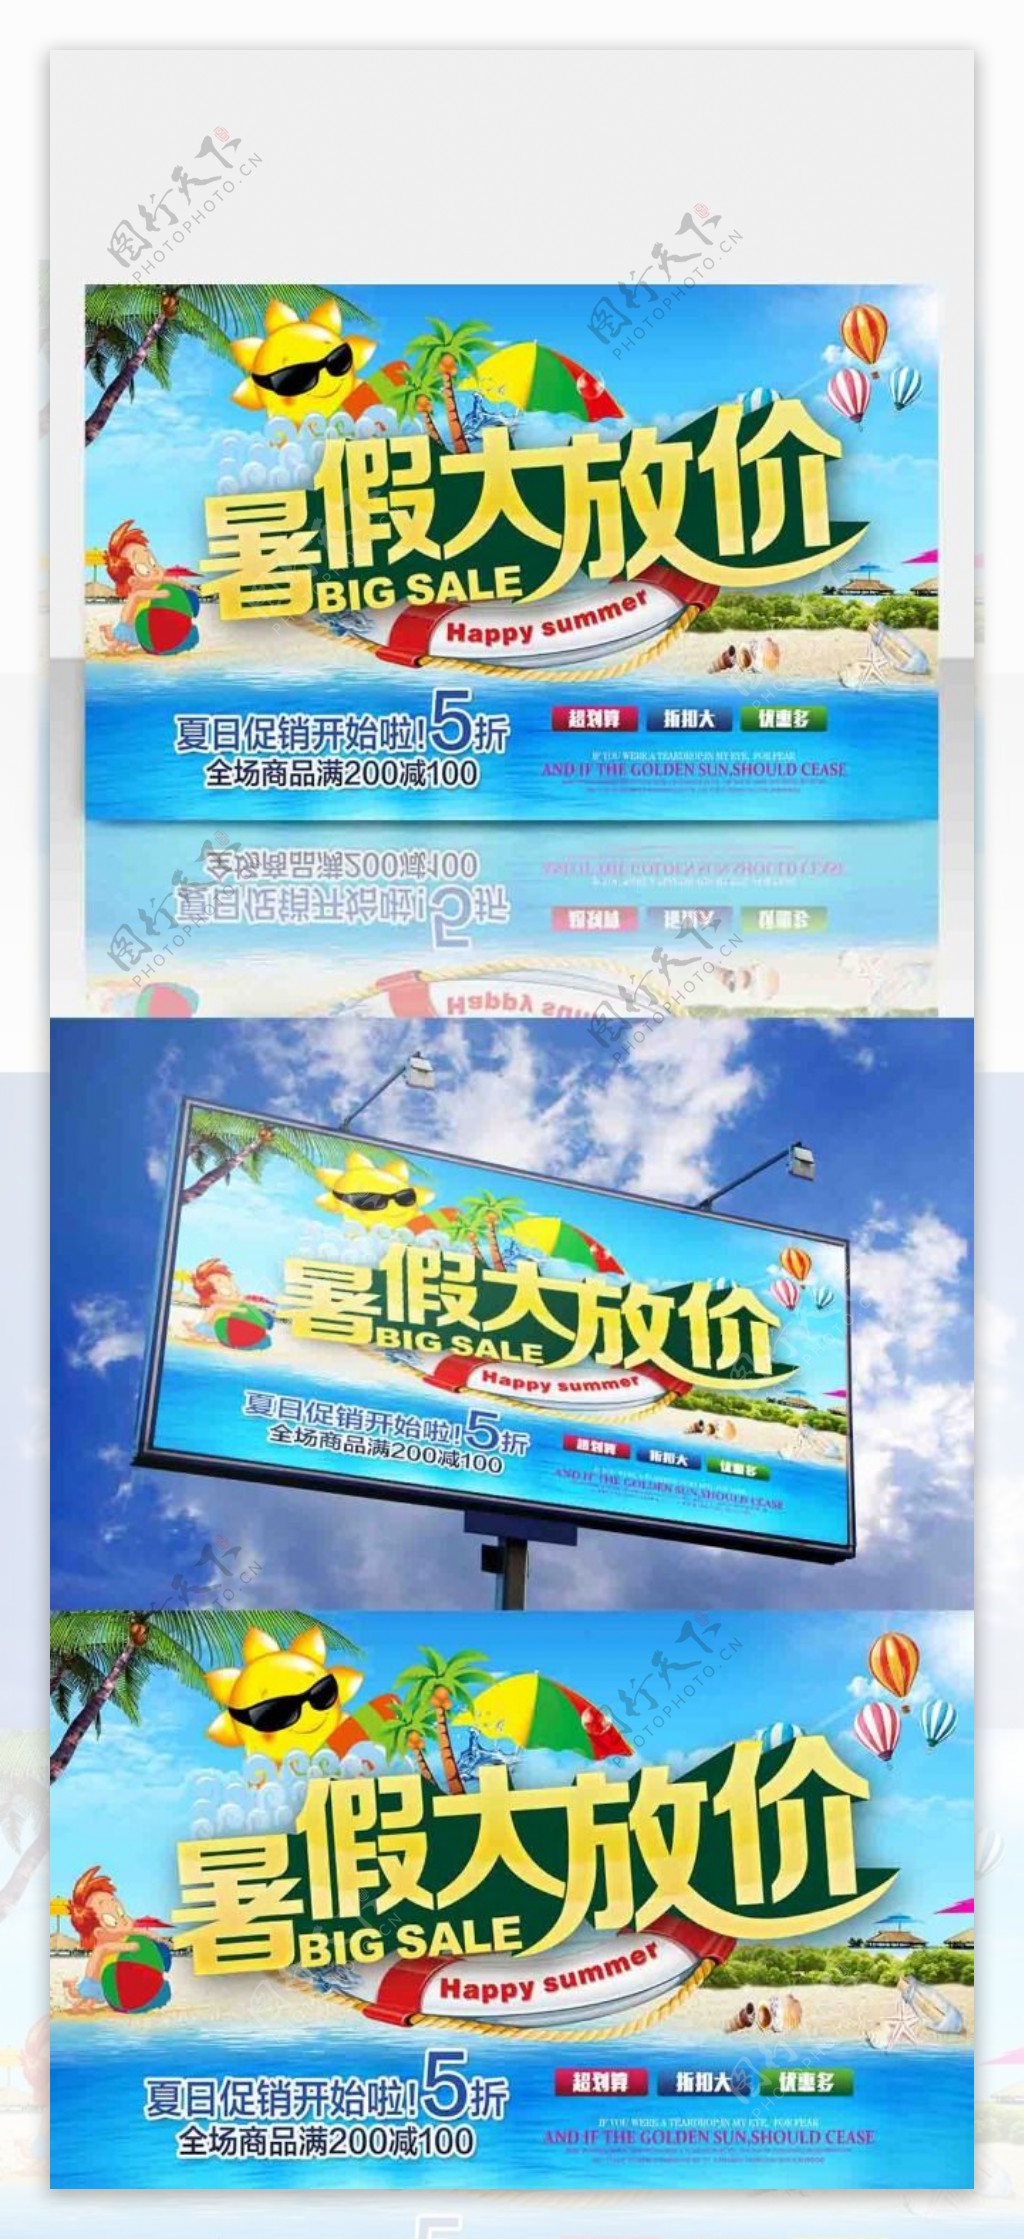 清新蓝色立体字暑假大放假促销海报设计